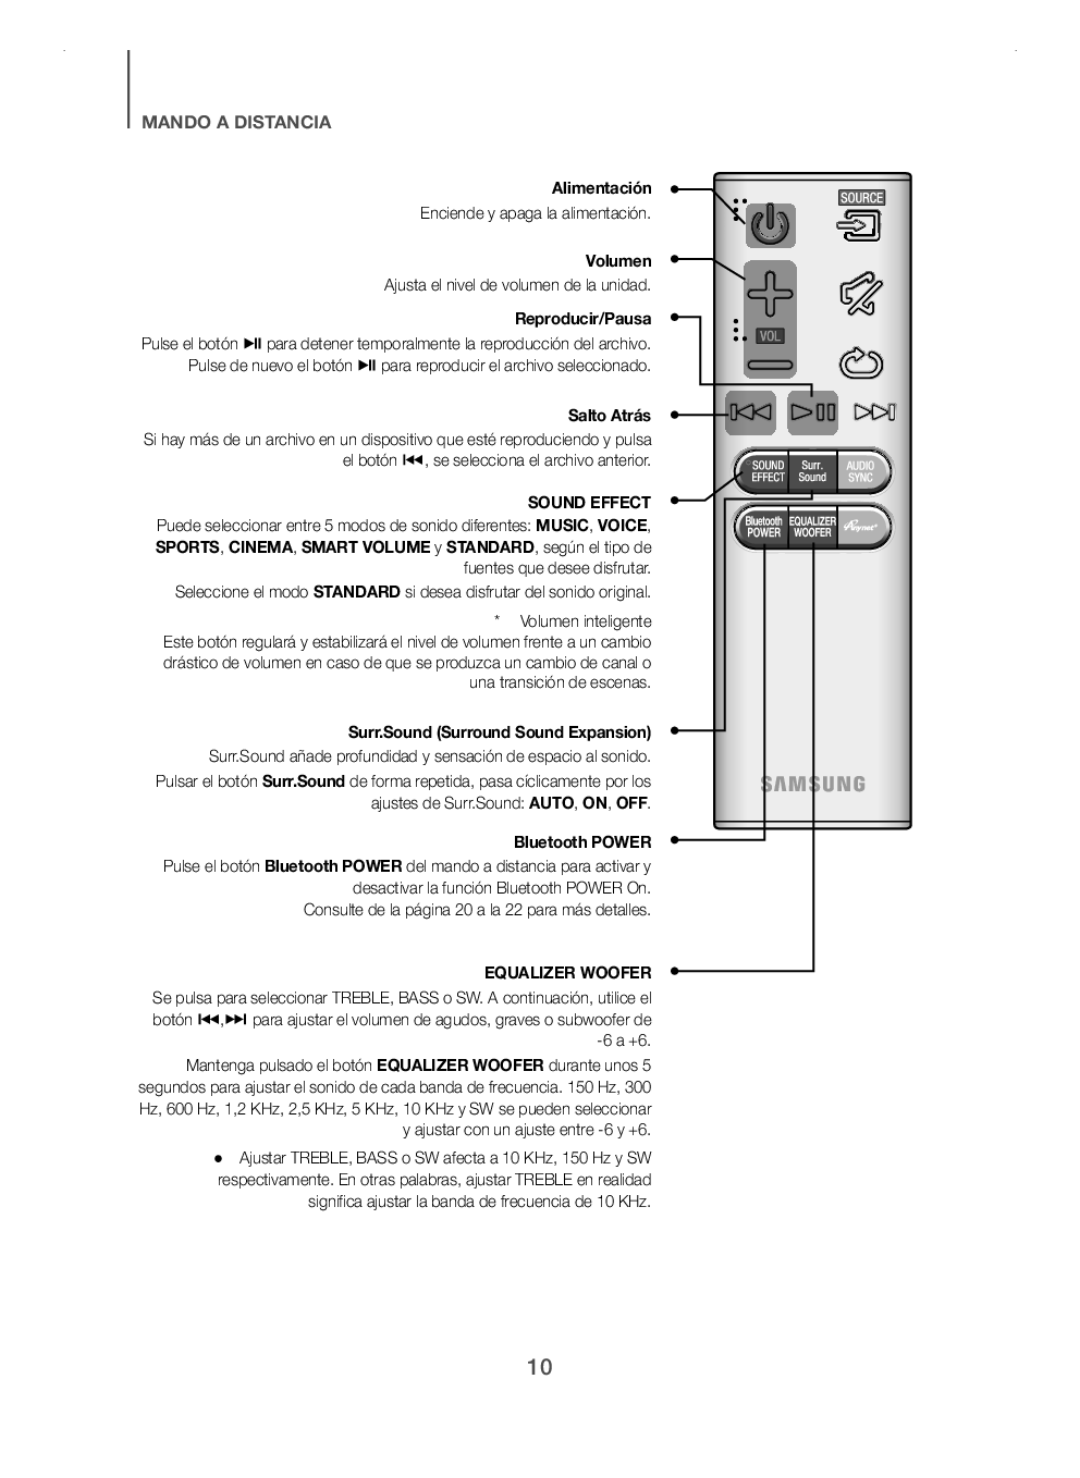 Samsung HW-H7501/ZF, HW-H7500/ZF Alimentación, Volumen, Reproducir/Pausa, Salto Atrás, Surr.Sound Surround Sound Expansion 